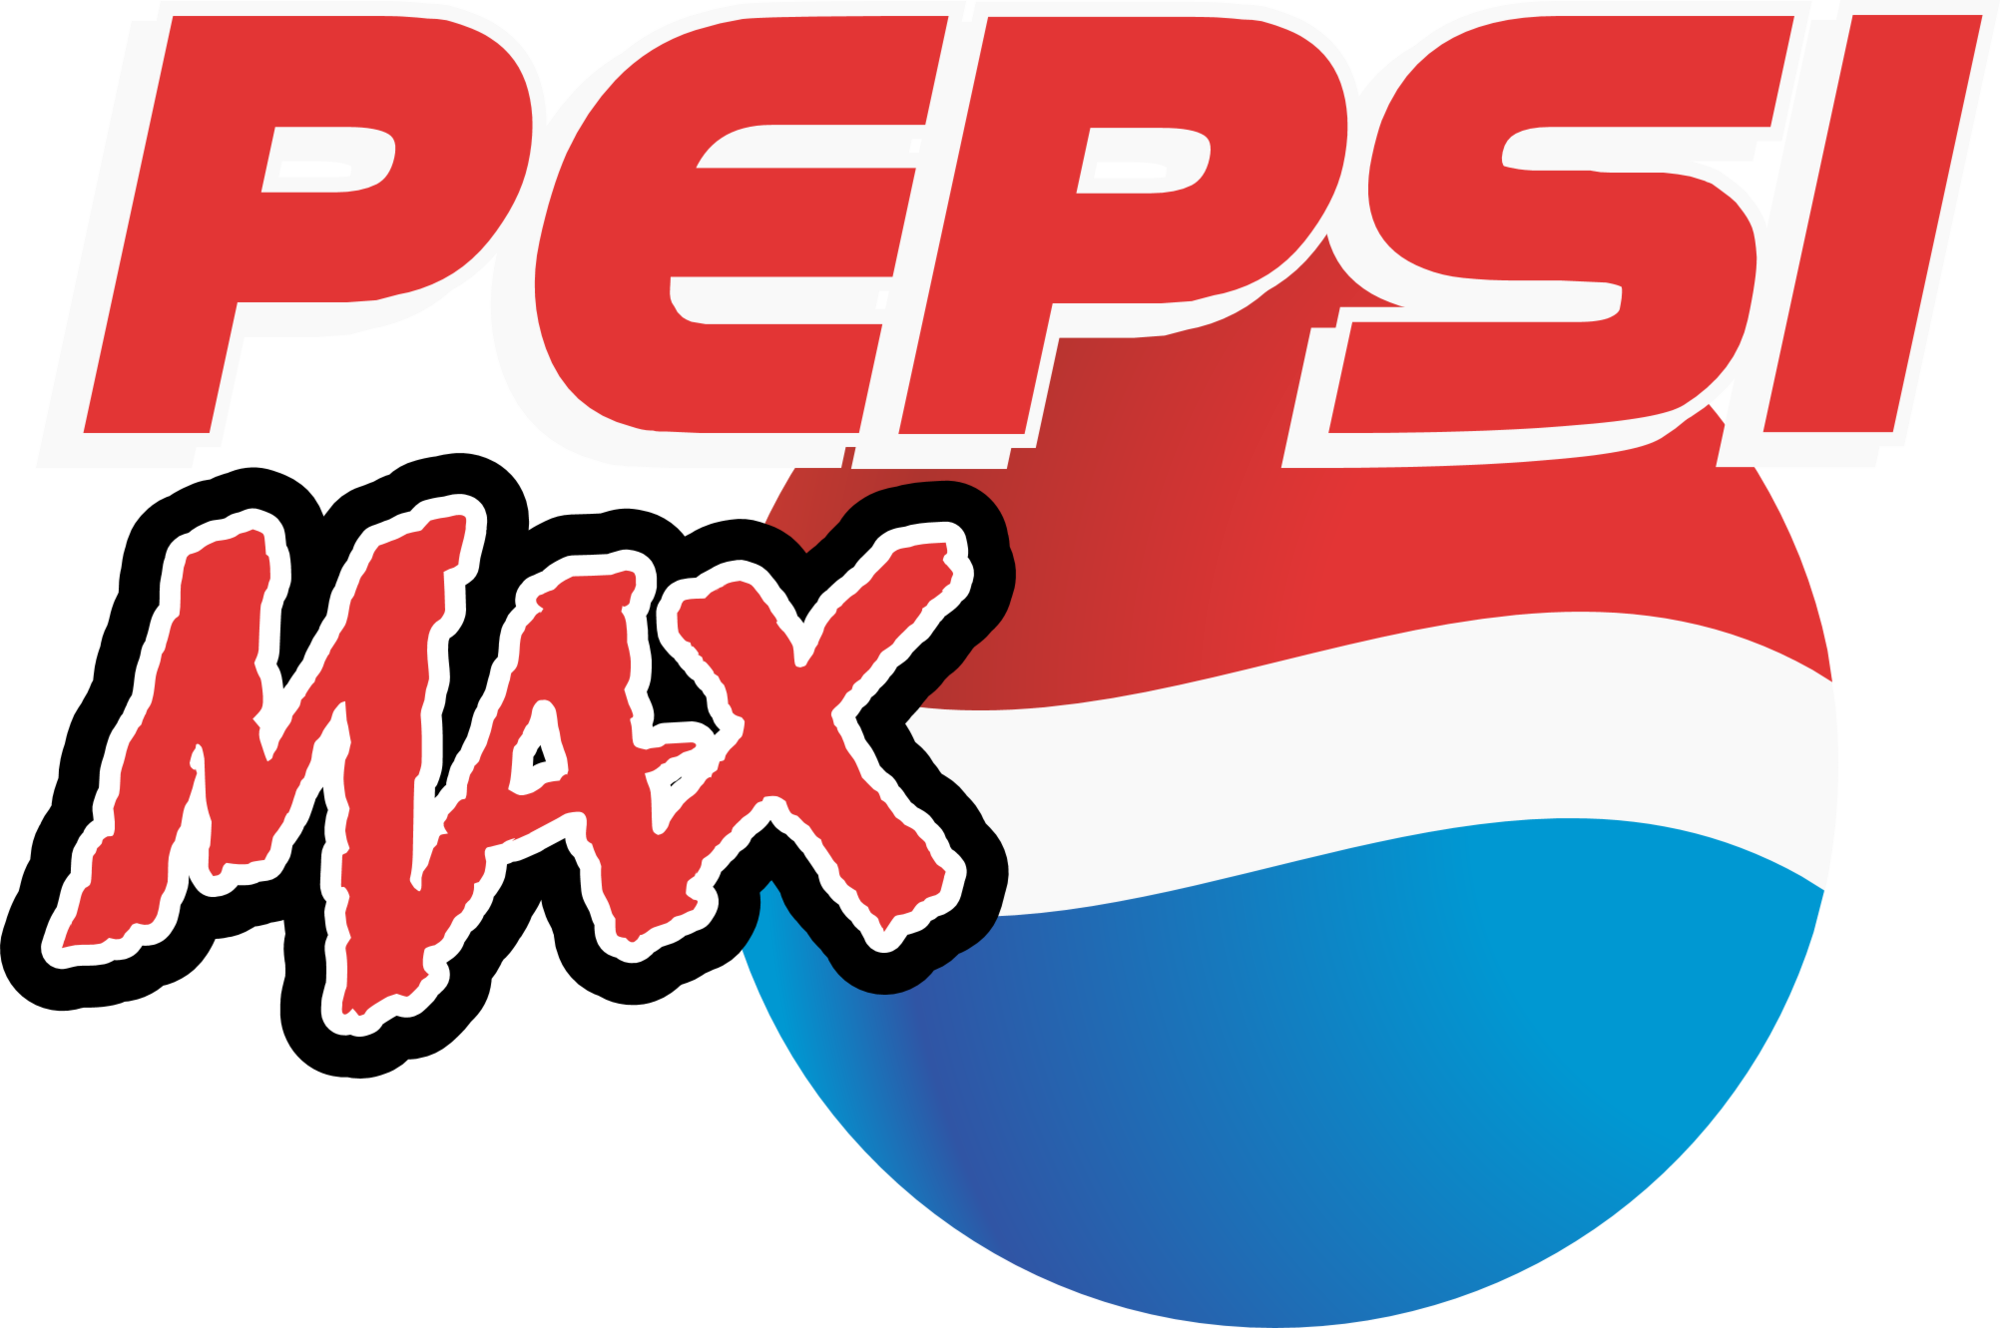 pepsi max logo png